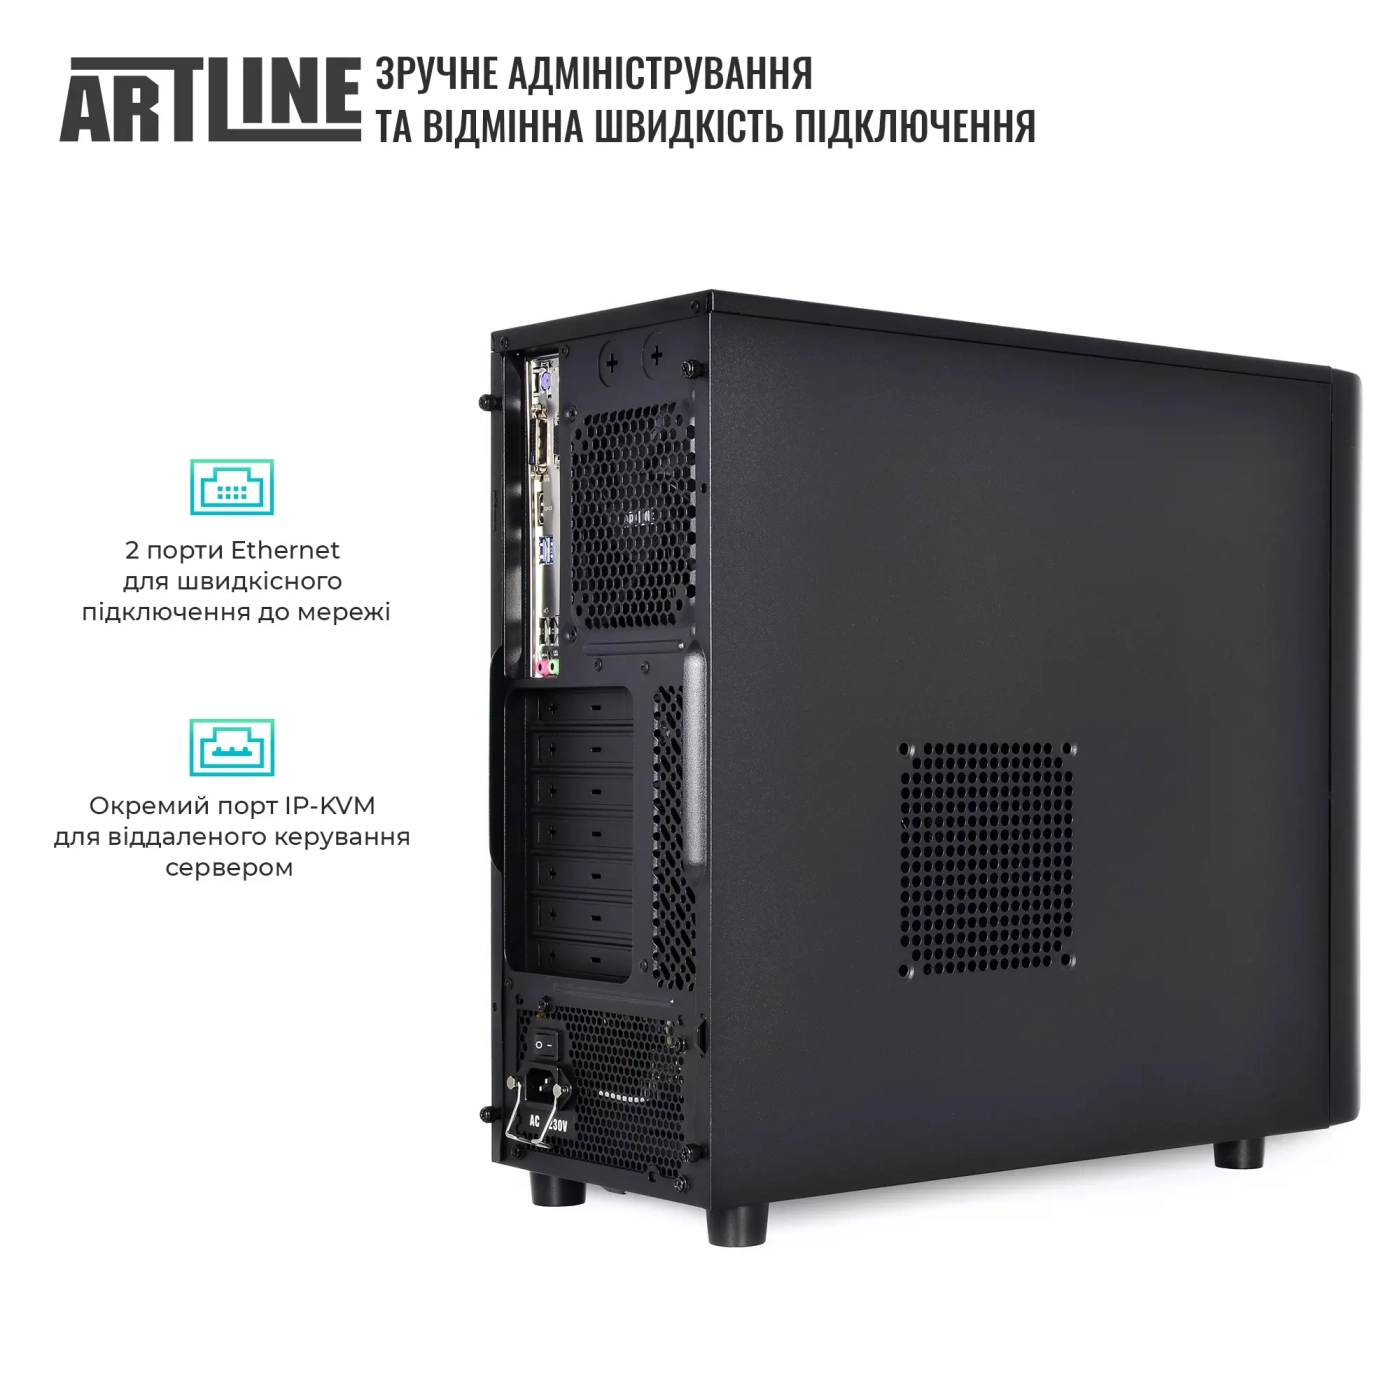 Купить Сервер ARTLINE Business T36 (T36v17) - фото 4